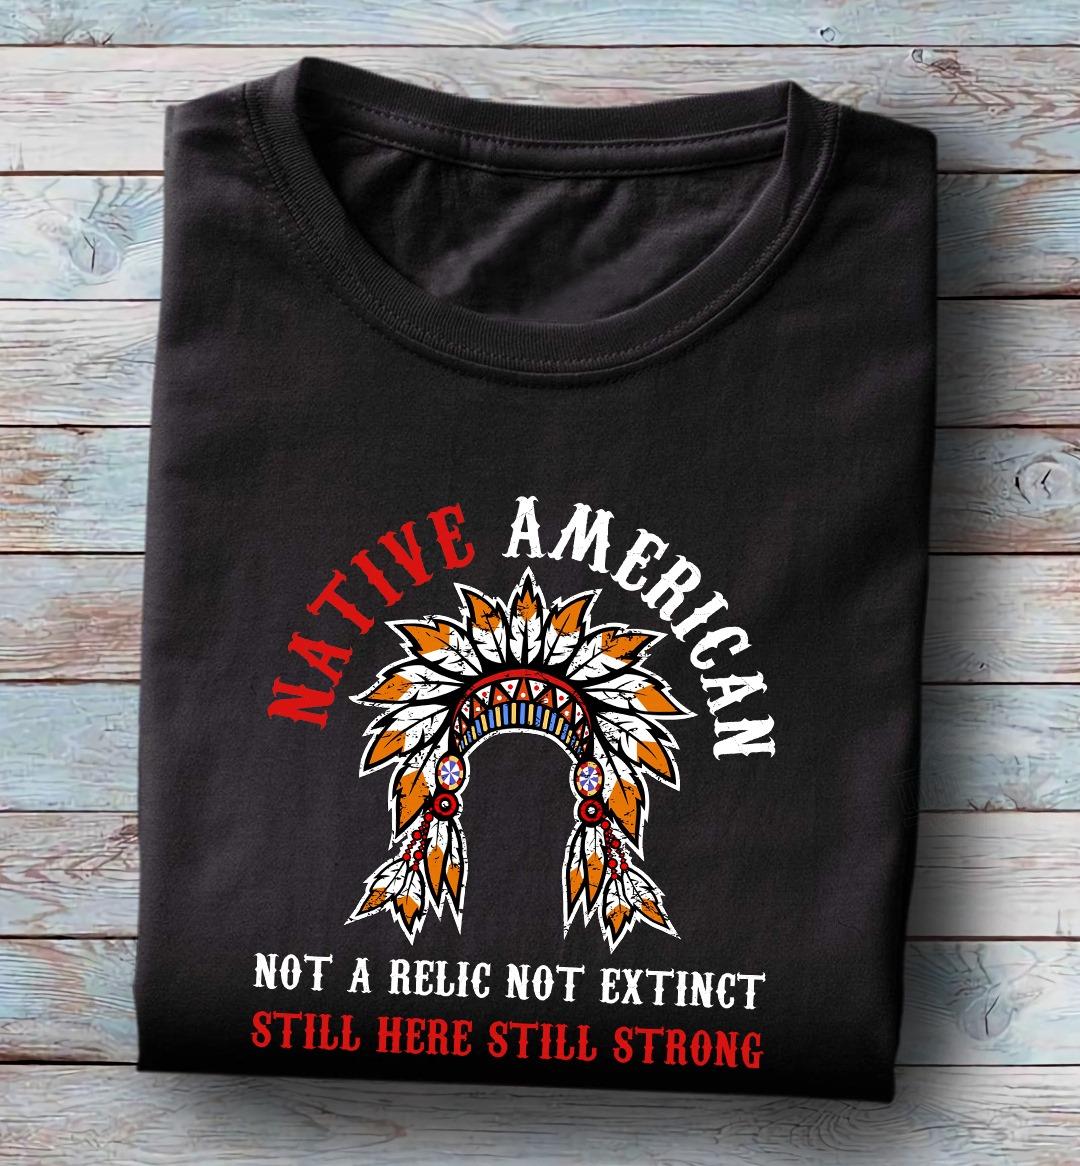 Native American – Still Here Still Strong Shirt